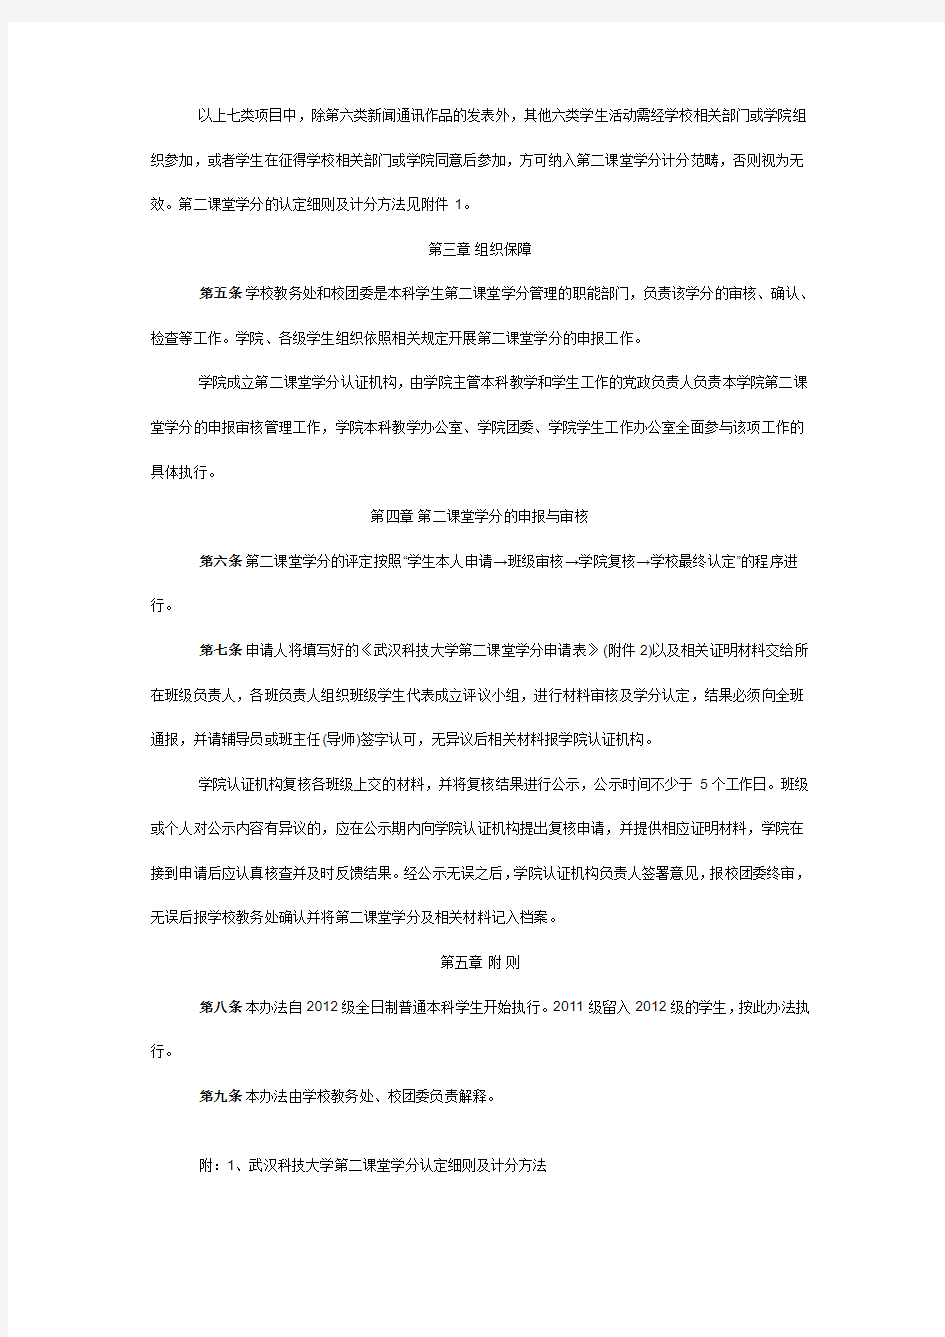 武汉科技大学“第二课堂”文件及评分细则